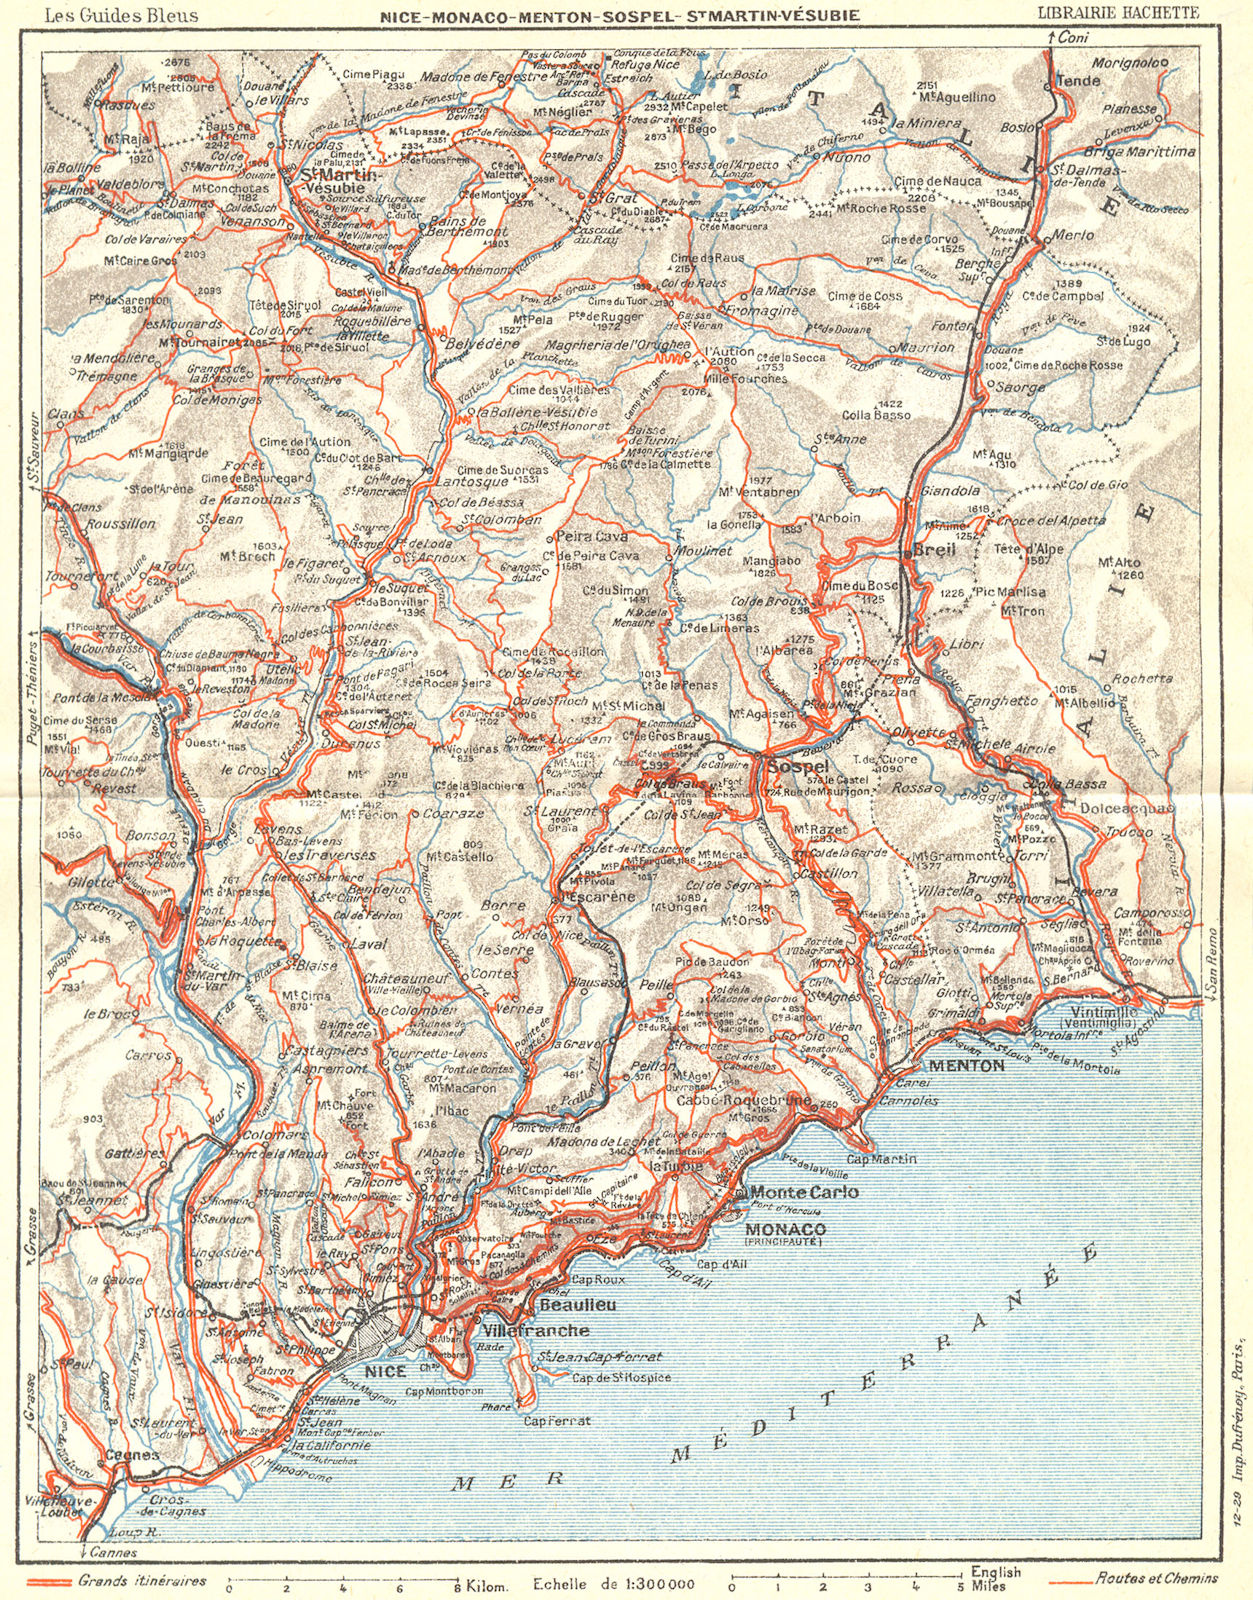 Associate Product COTE D'AZUR. Nice Monaco Menton Vesubie 1926 old vintage map plan chart